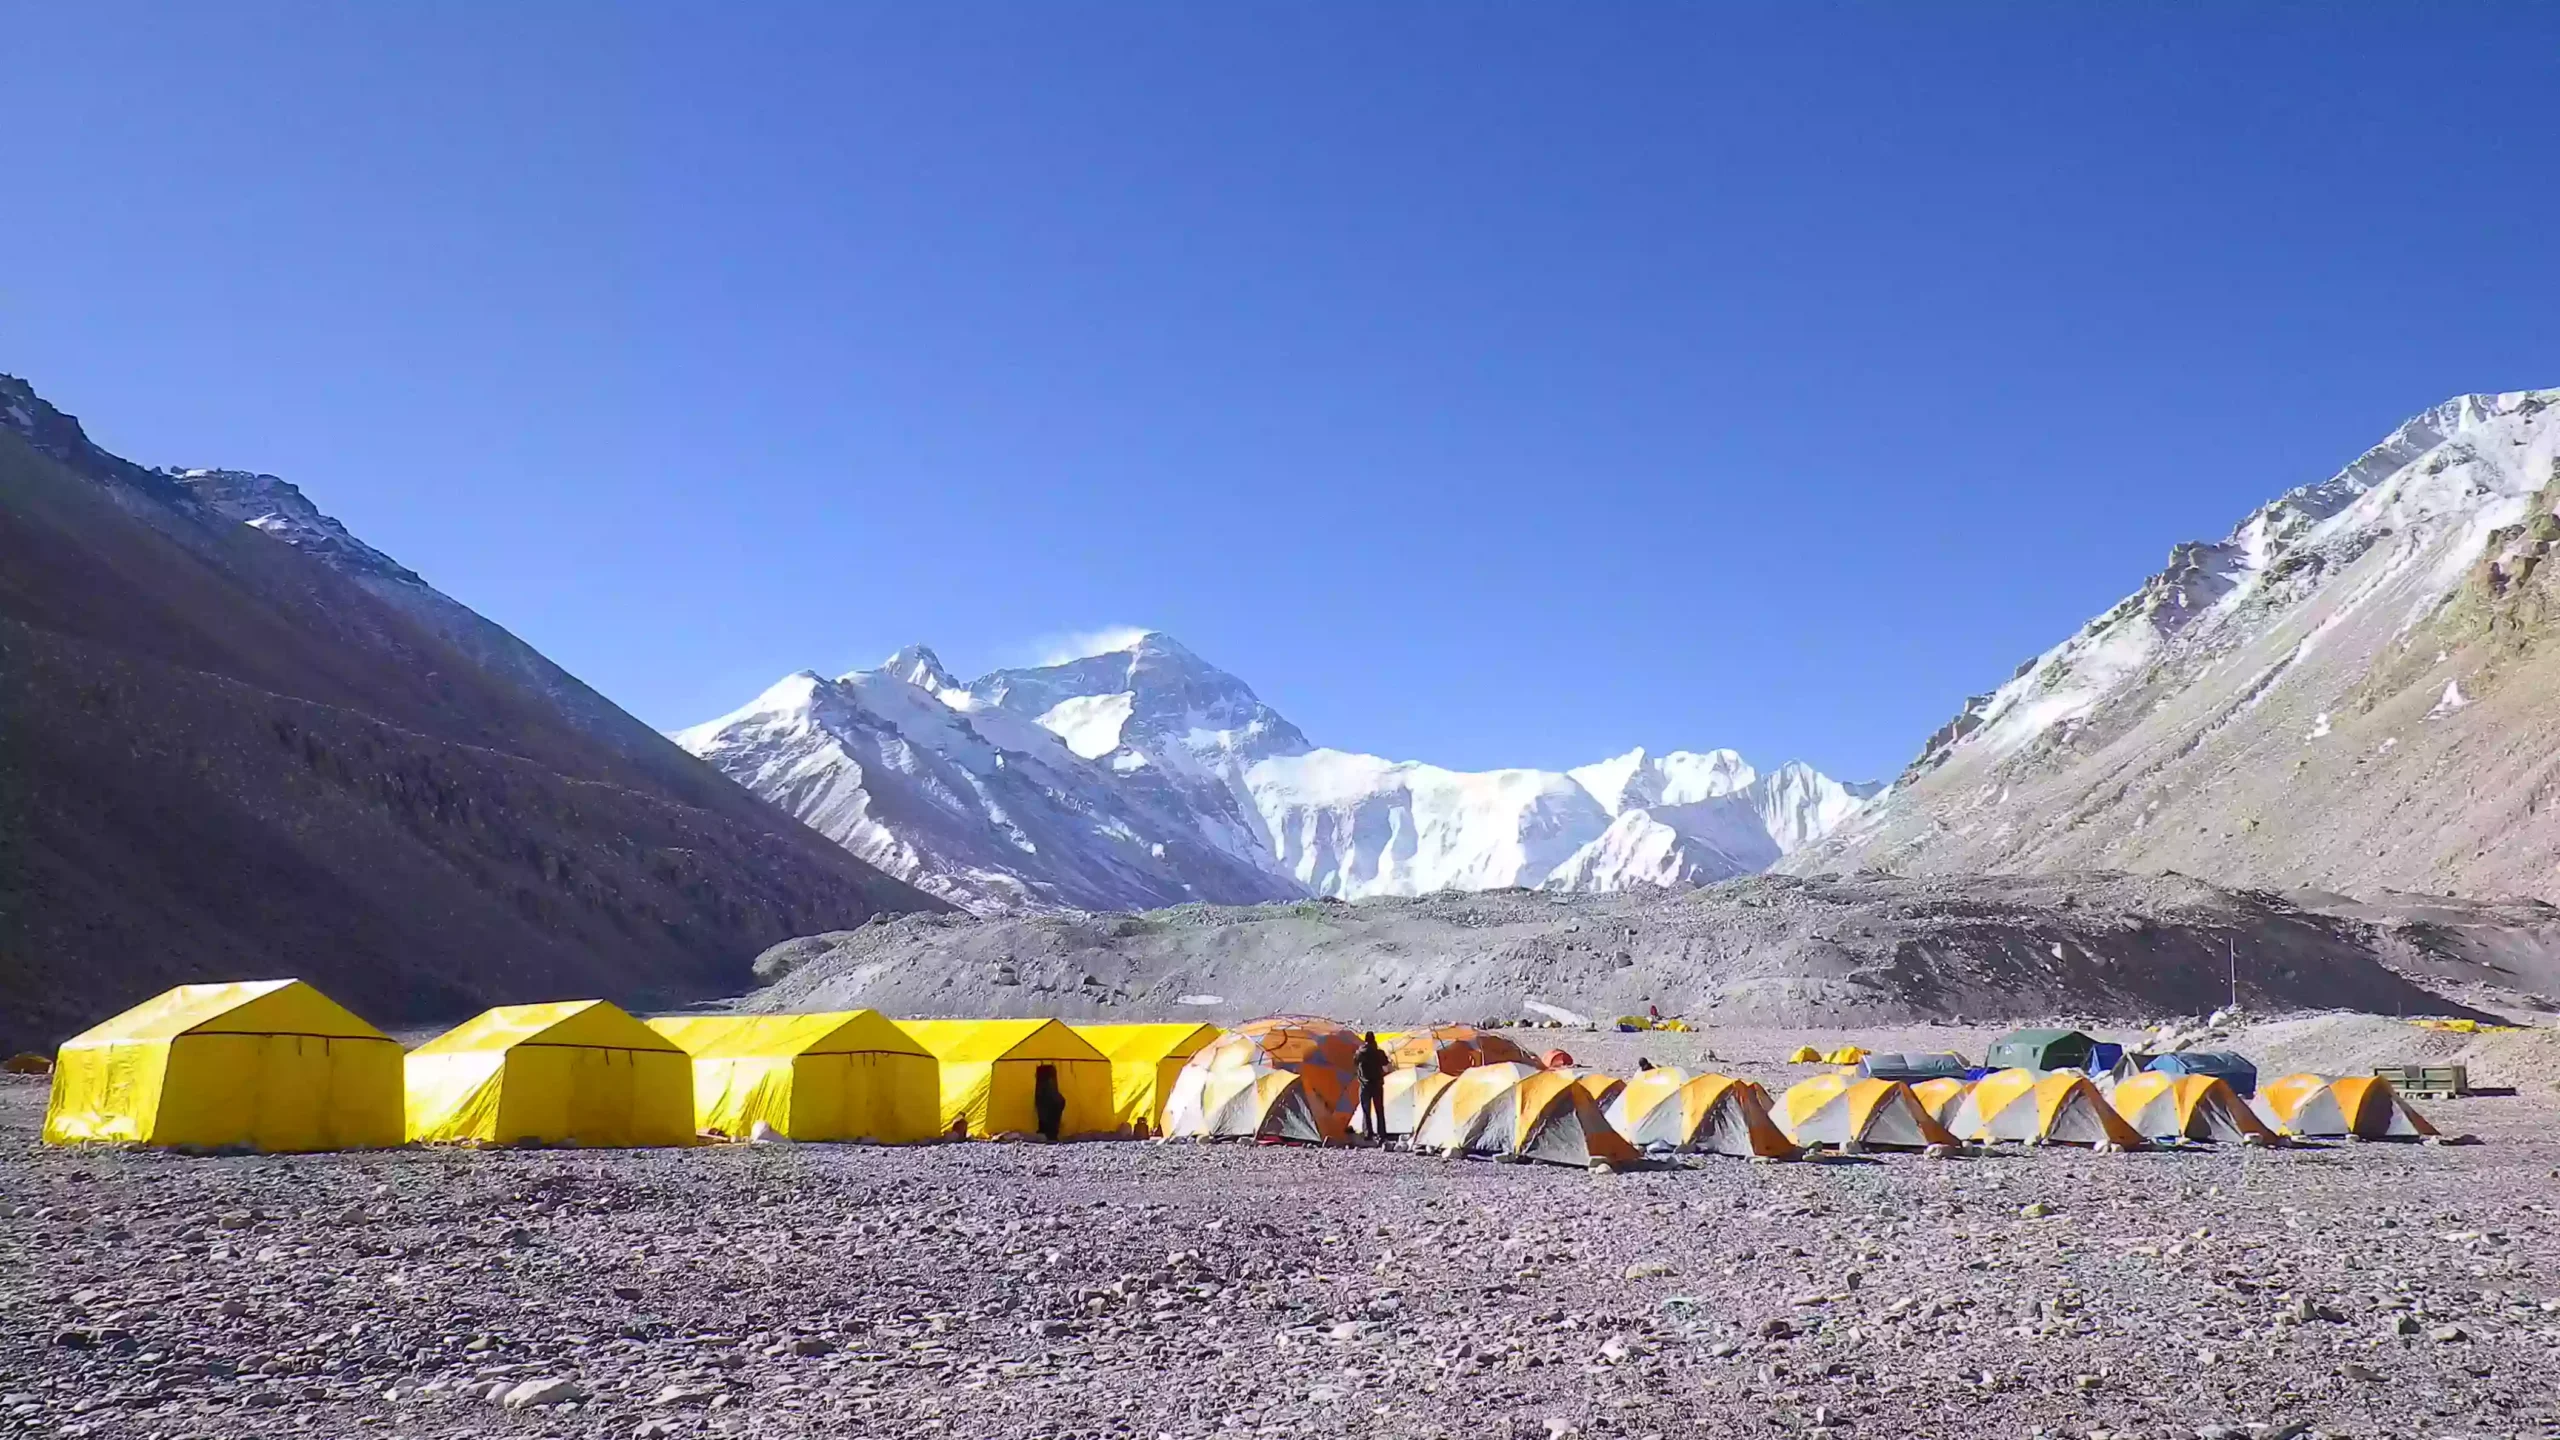 Lhasa Everest base camp